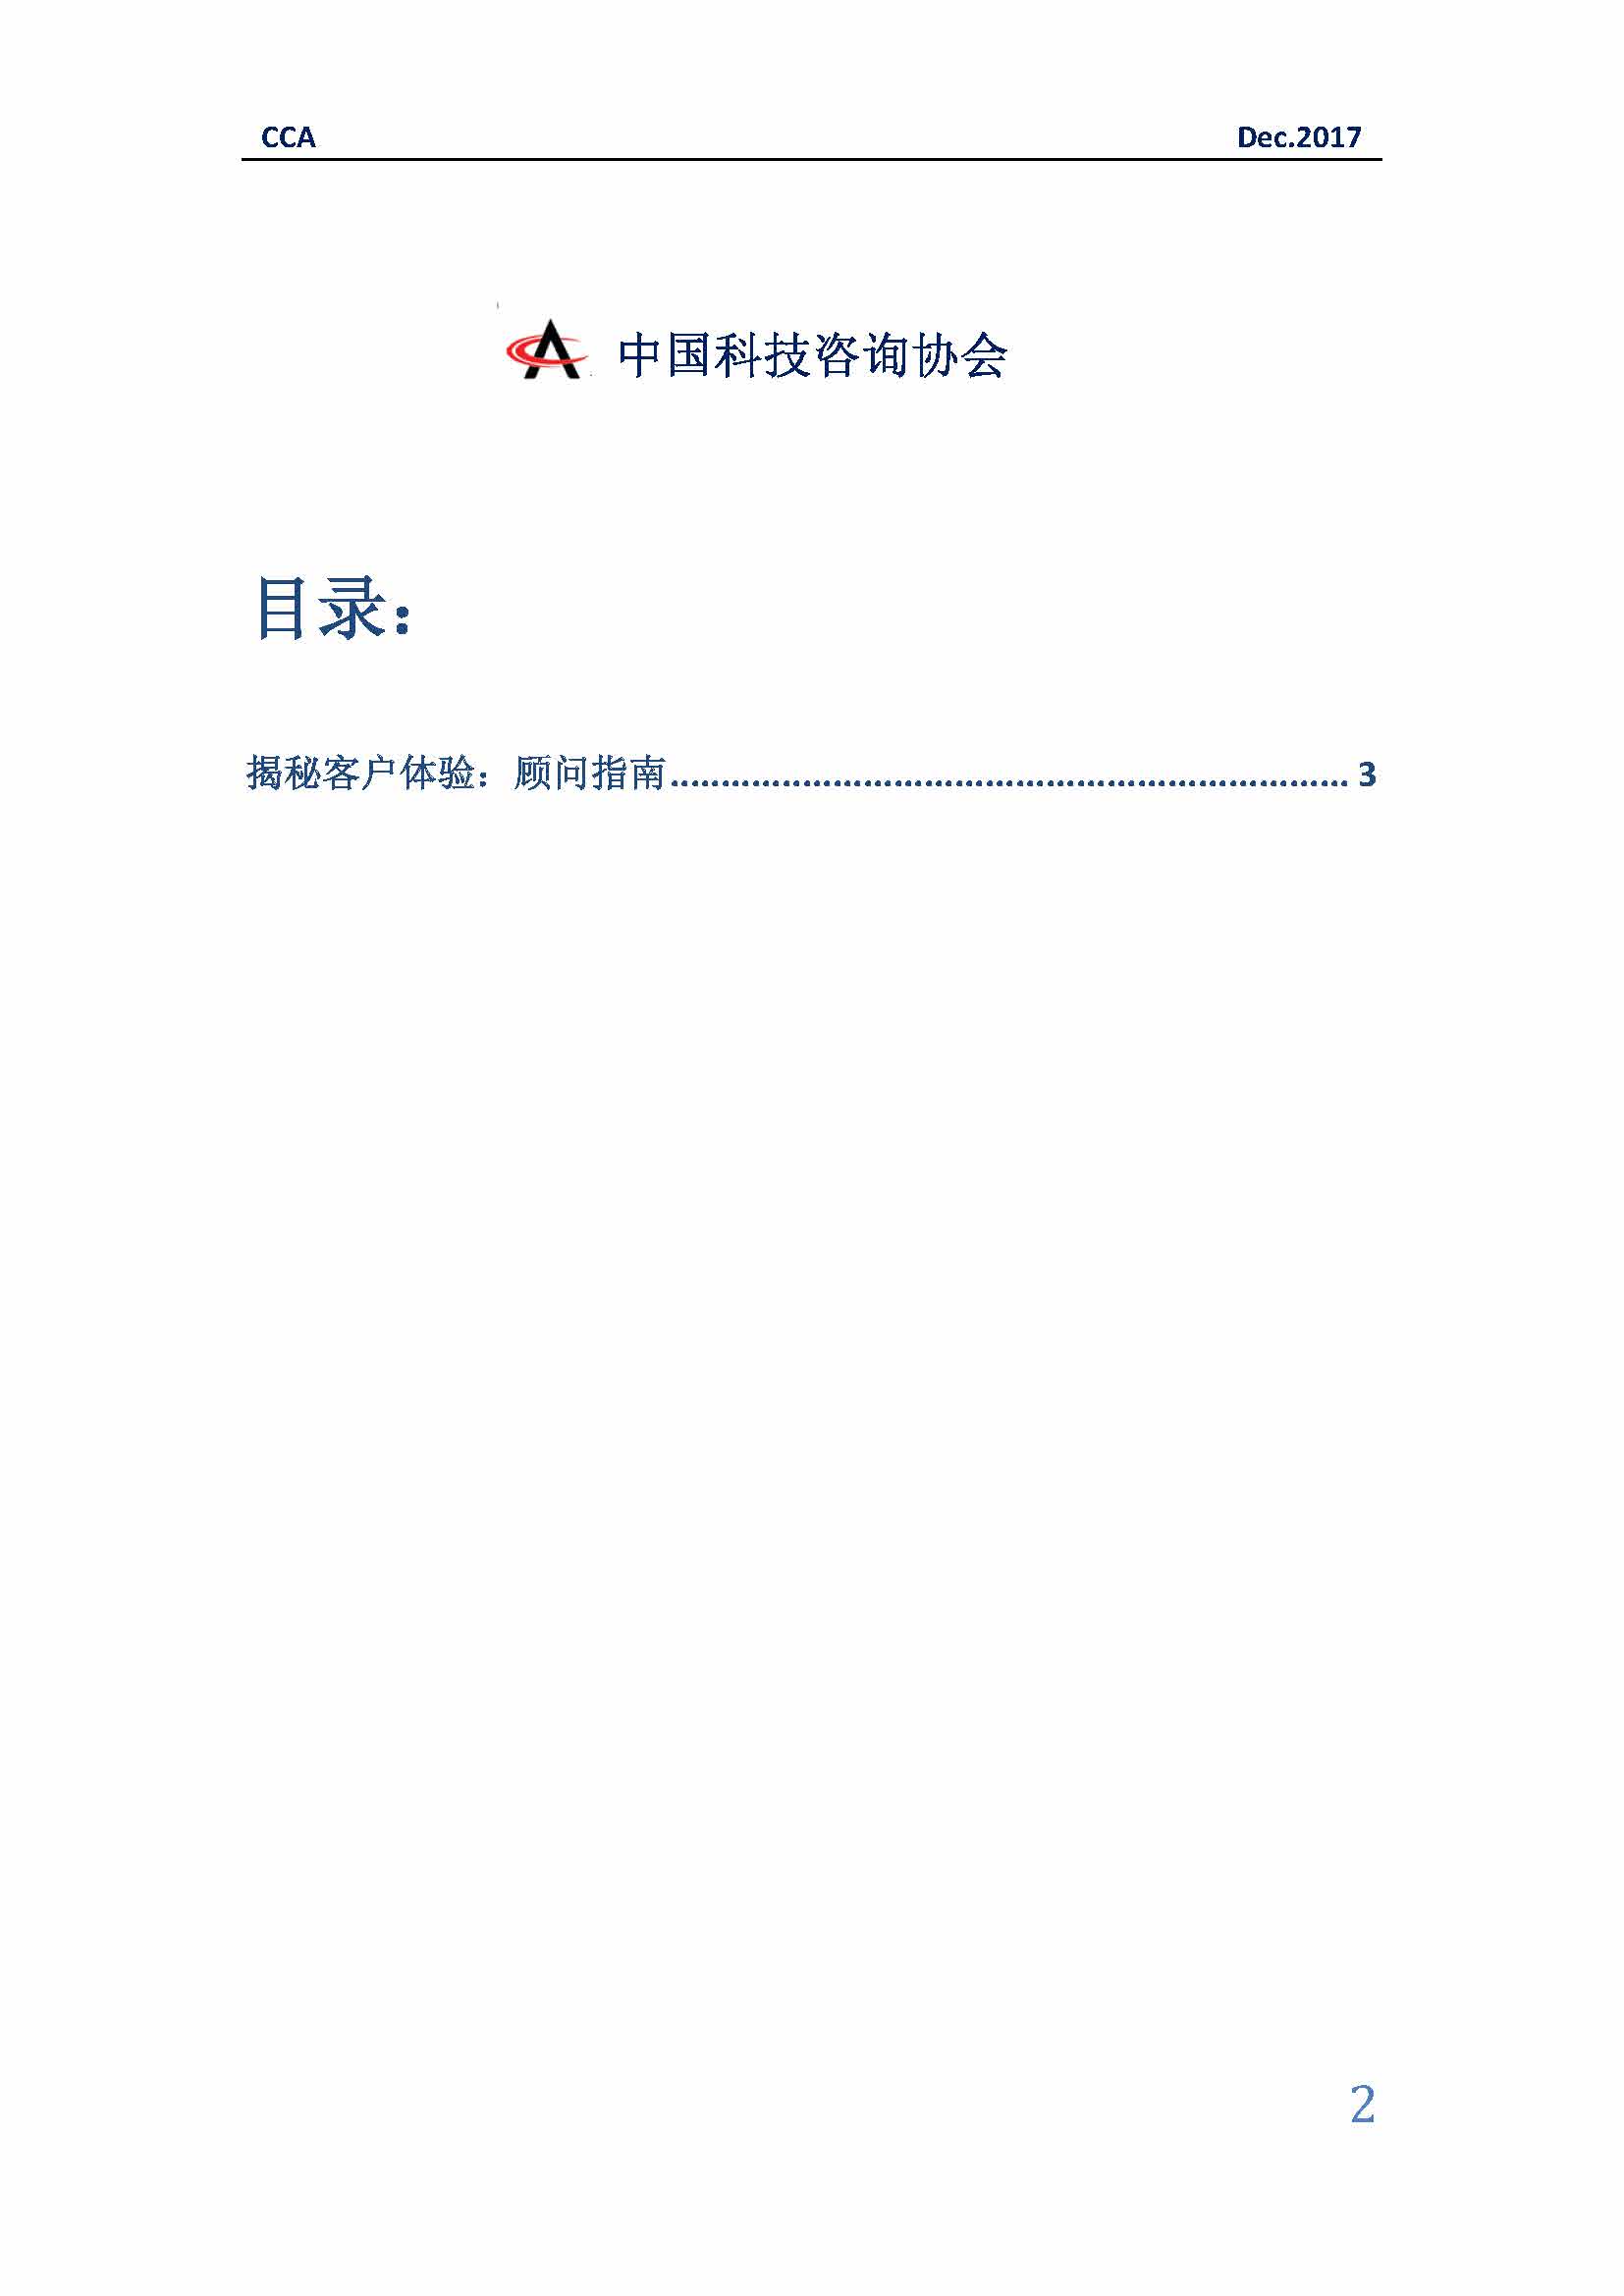 中国科技咨询协会国际快讯（第三十一期）_页面_02.jpg